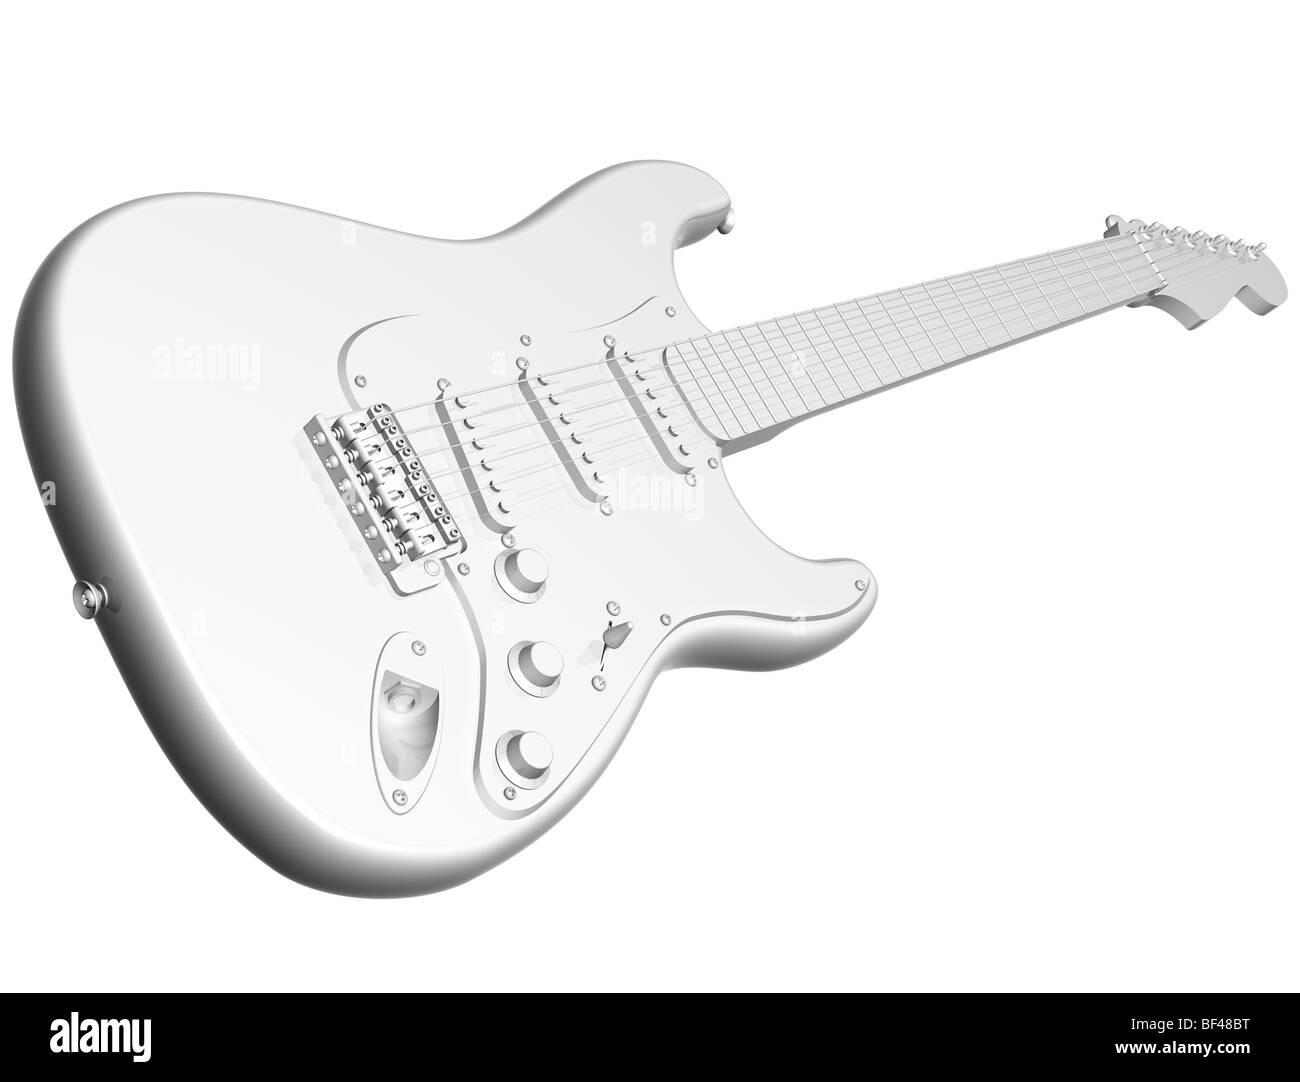 Abbildung von einer isolierten alle weiße e-Gitarre Stockfotografie - Alamy